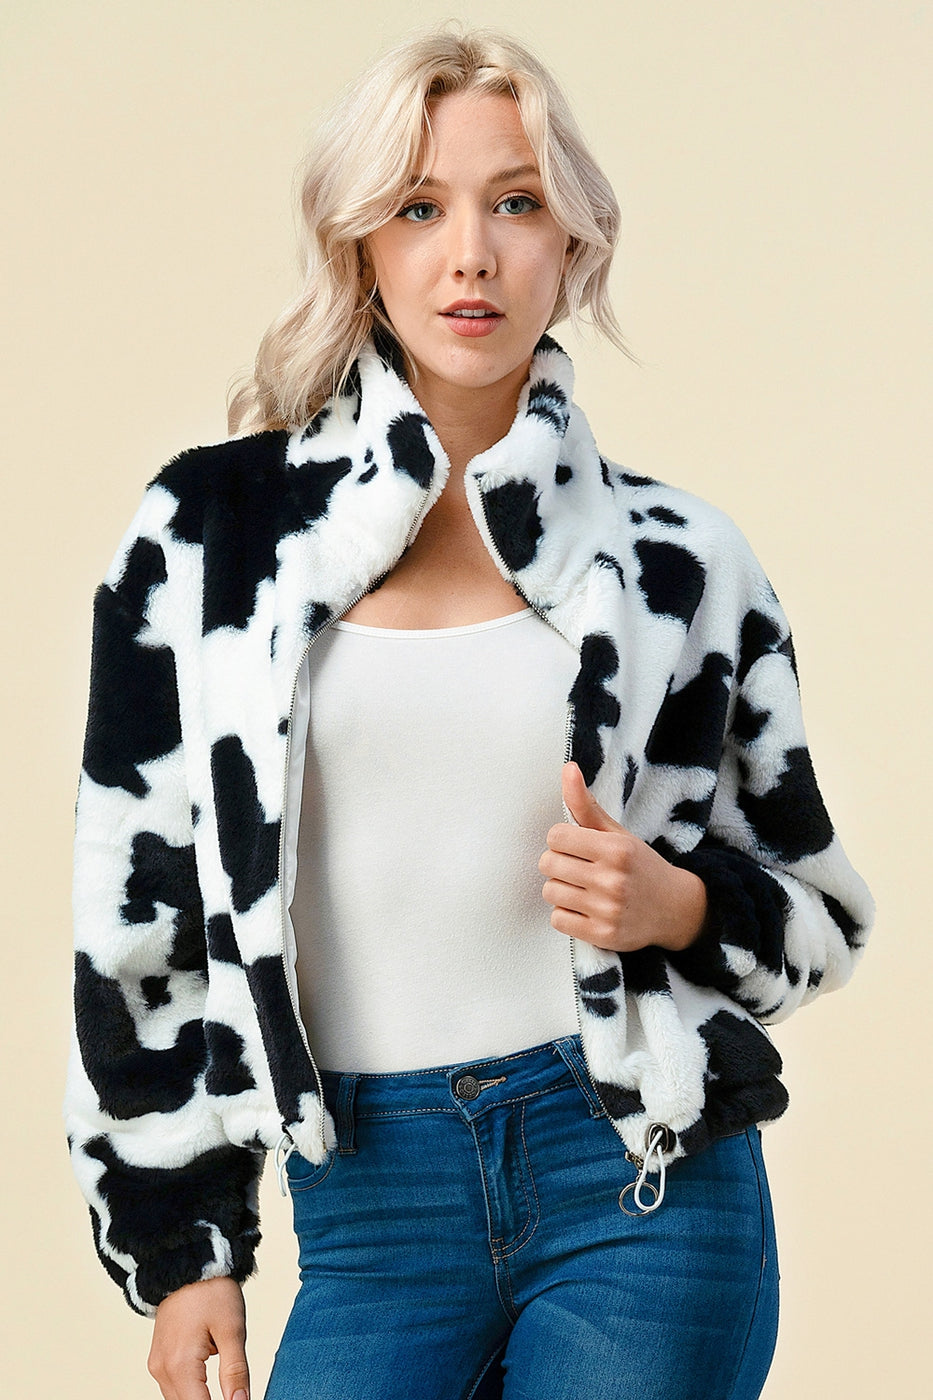 Women Cow Print Faux Fur Zip Up Jacket White Black